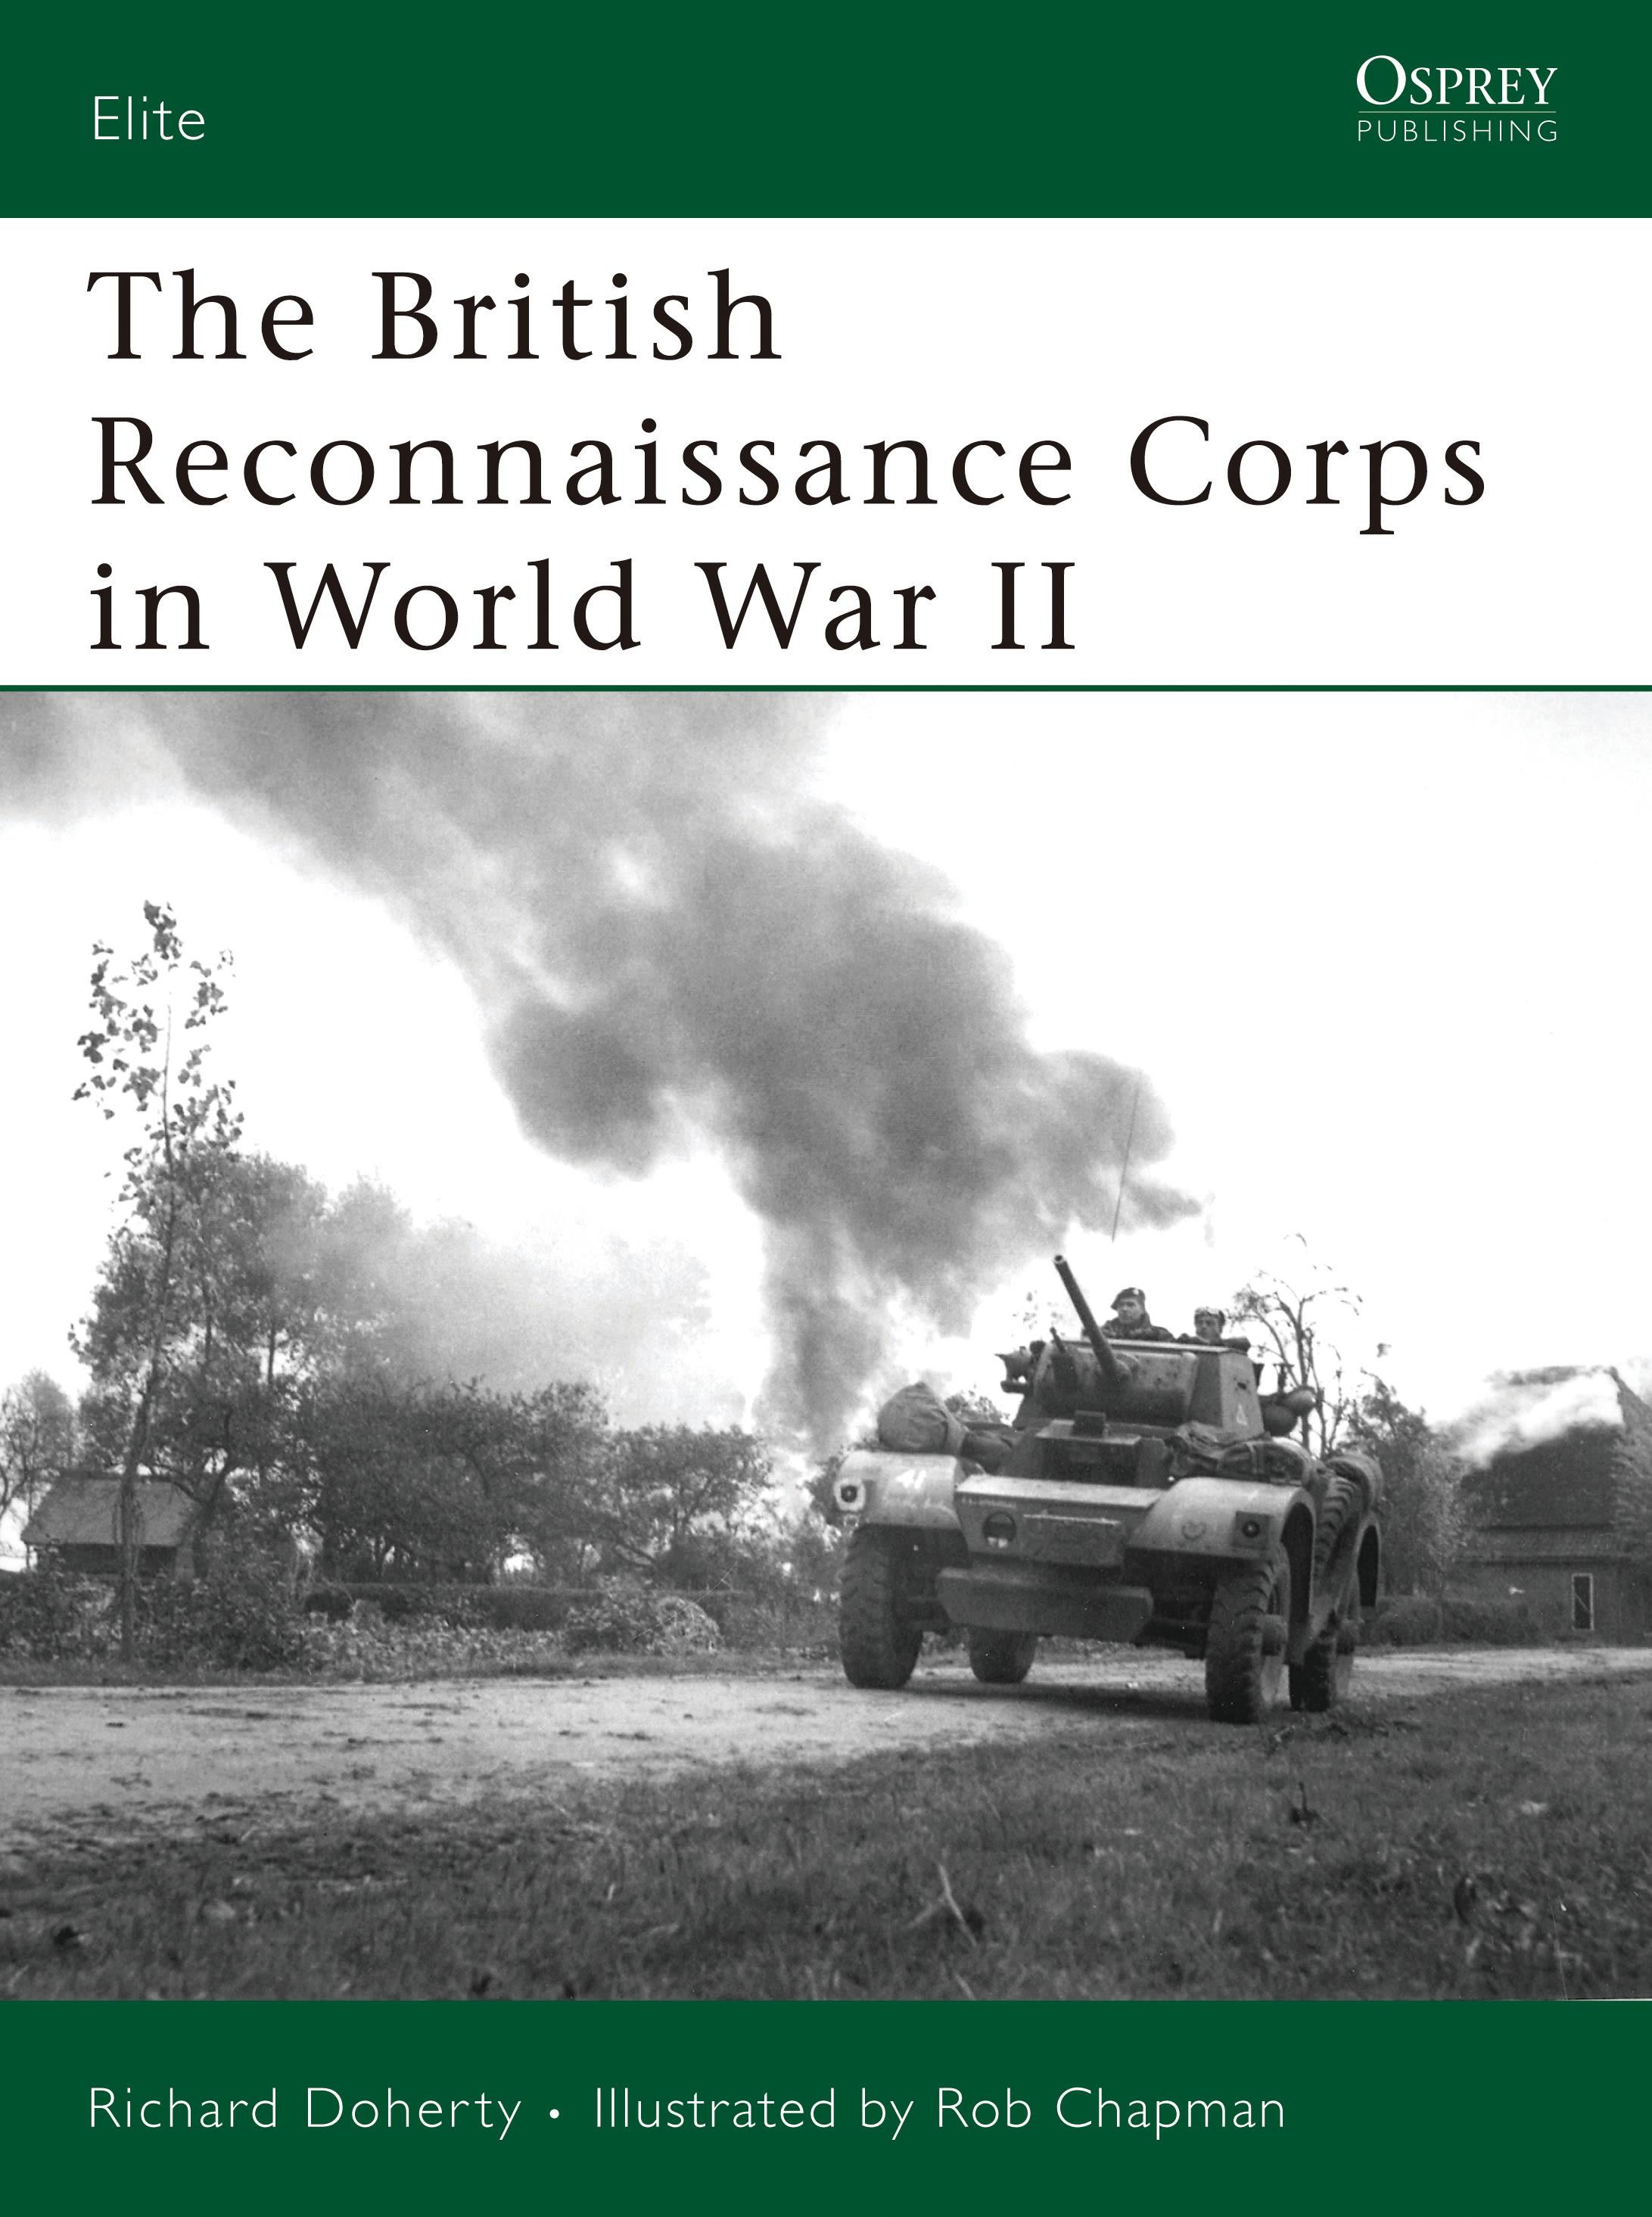 The British Reconnaissance Corps in World War II / Richard Doherty / Taschenbuch / Elite / Englisch / 2007 / OSPREY PUB INC / EAN 9781846031229 - Doherty, Richard